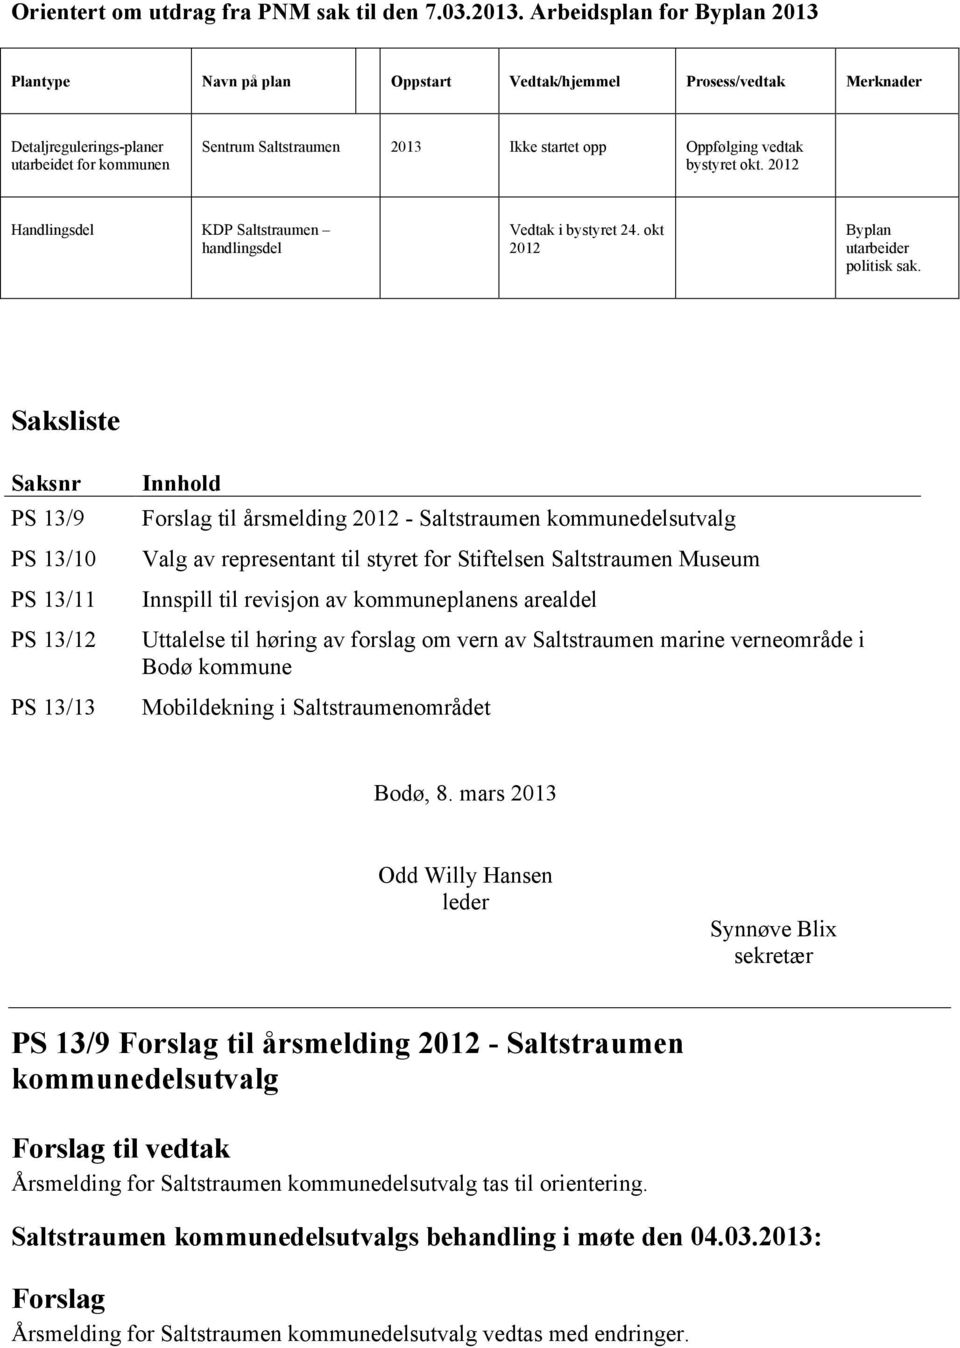 vedtak bystyret okt. 2012 Handlingsdel KDP Saltstraumen handlingsdel i bystyret 24. okt 2012 Byplan utarbeider politisk sak.